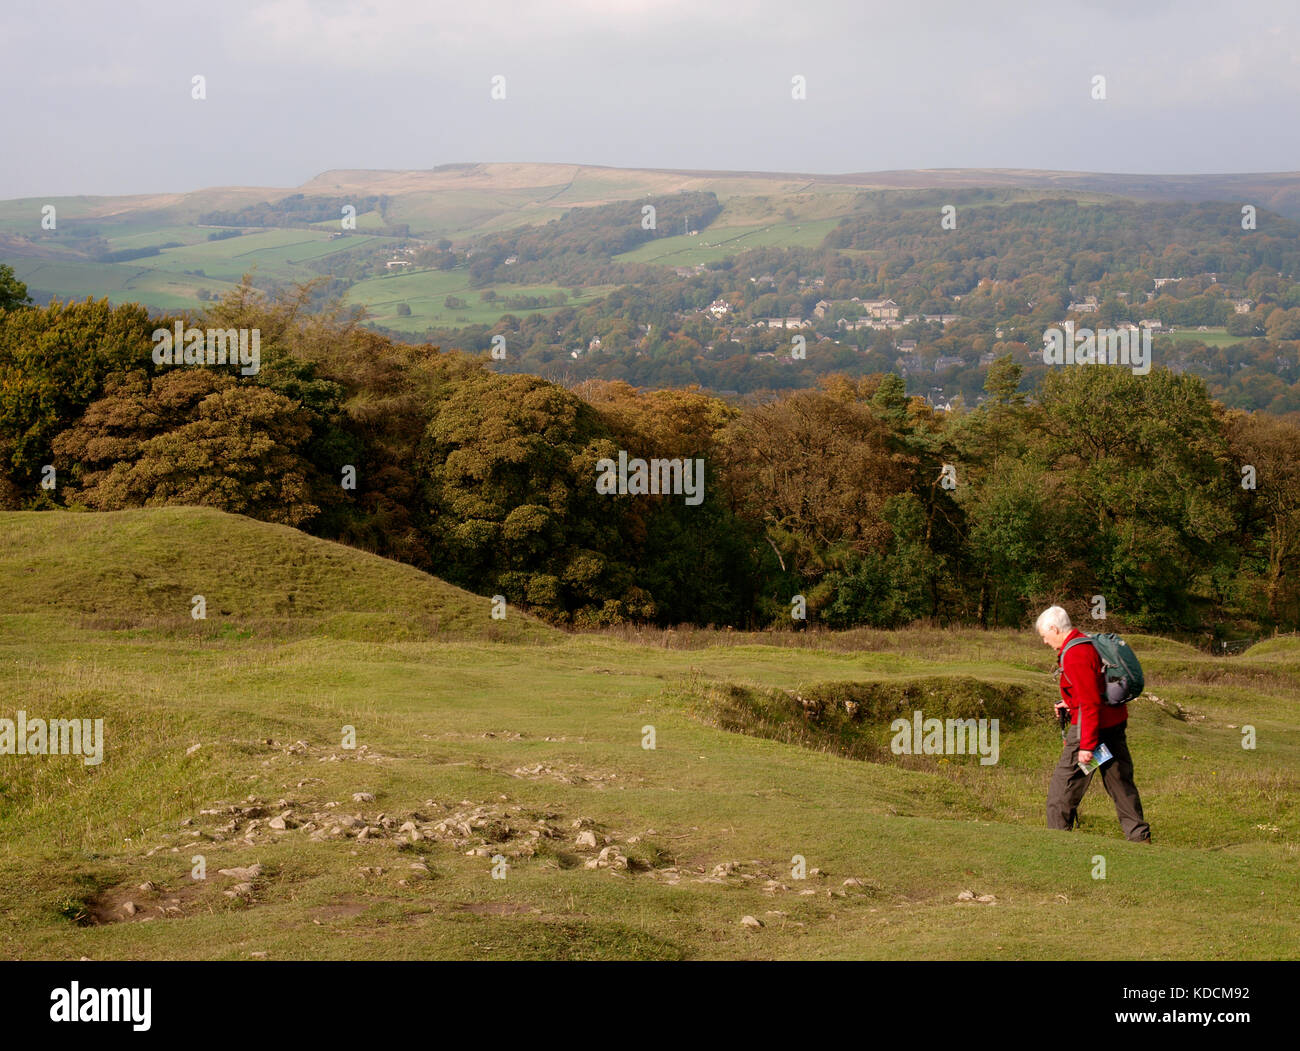 Alter Mann wandern in das Grinsen niedrig und Buxton Country Park, Buxton, der Peak District, Derbyshire, Großbritannien Stockfoto